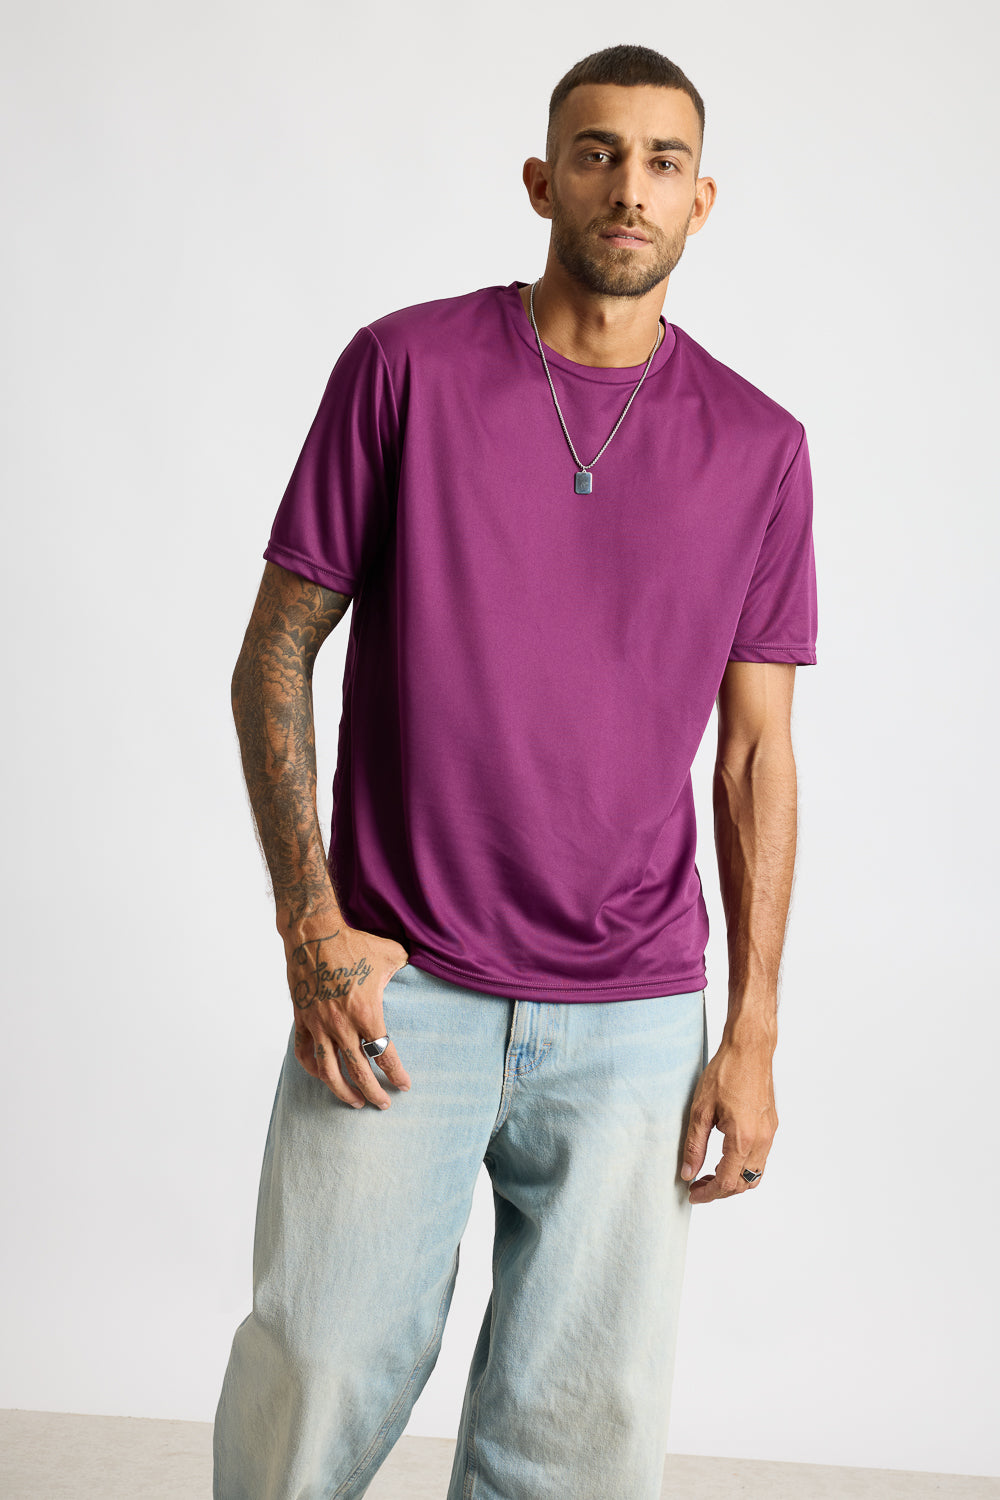 AOP Men's T-shirt - Classic Purple